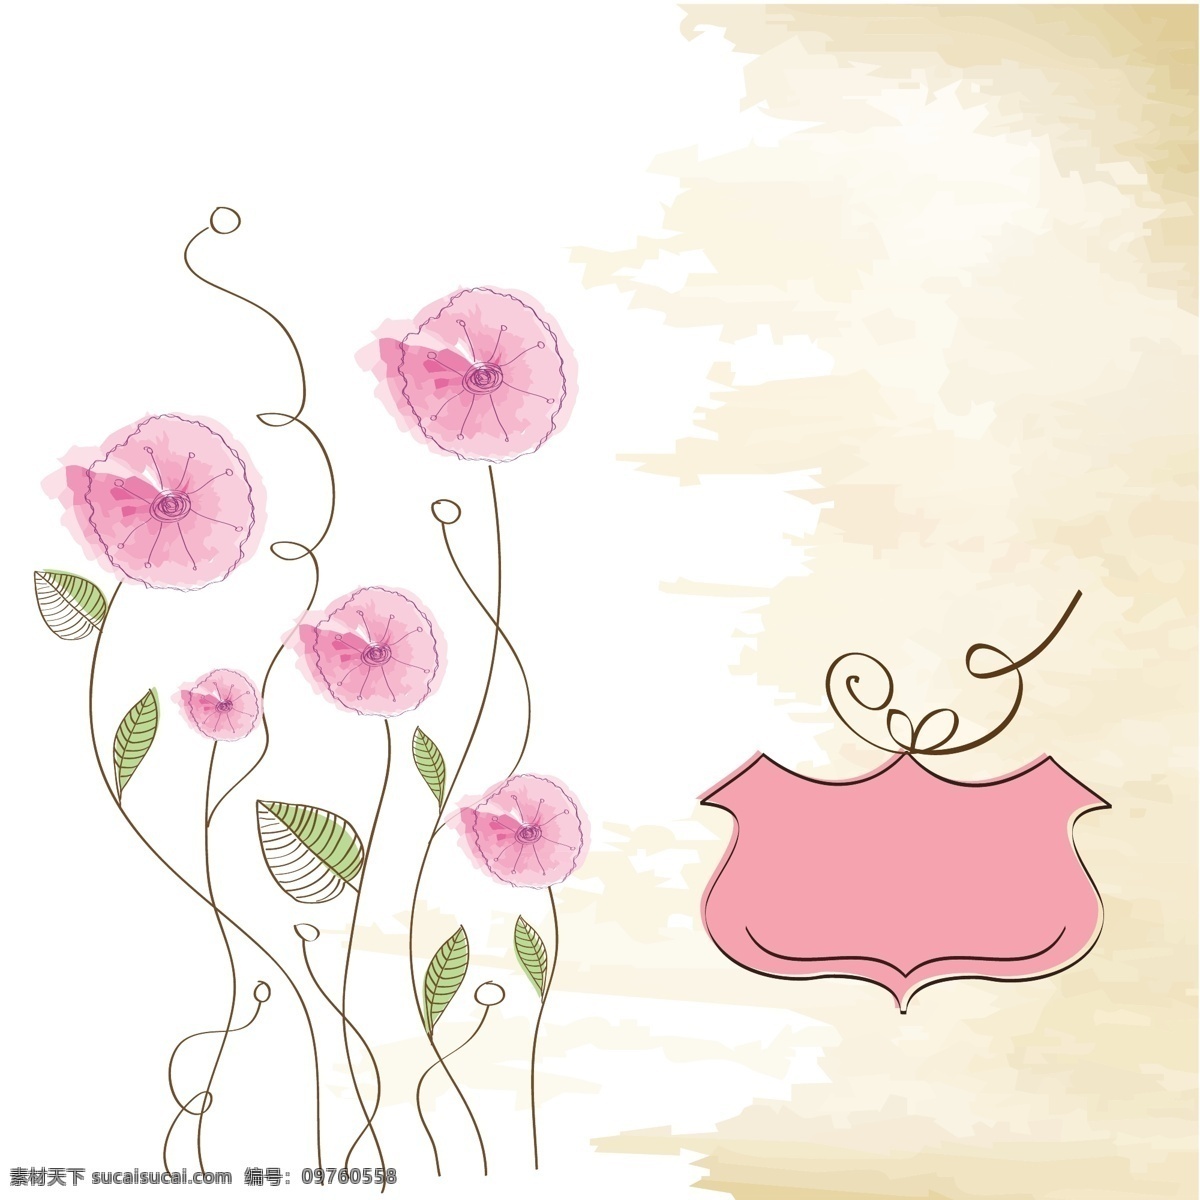 手绘 背景 粉红色 花 年份 花卉 标签 邀请 水彩 手 卡 徽章 复古 复古背景 自然 模板 叶 美容 手画 粉 可爱 白色